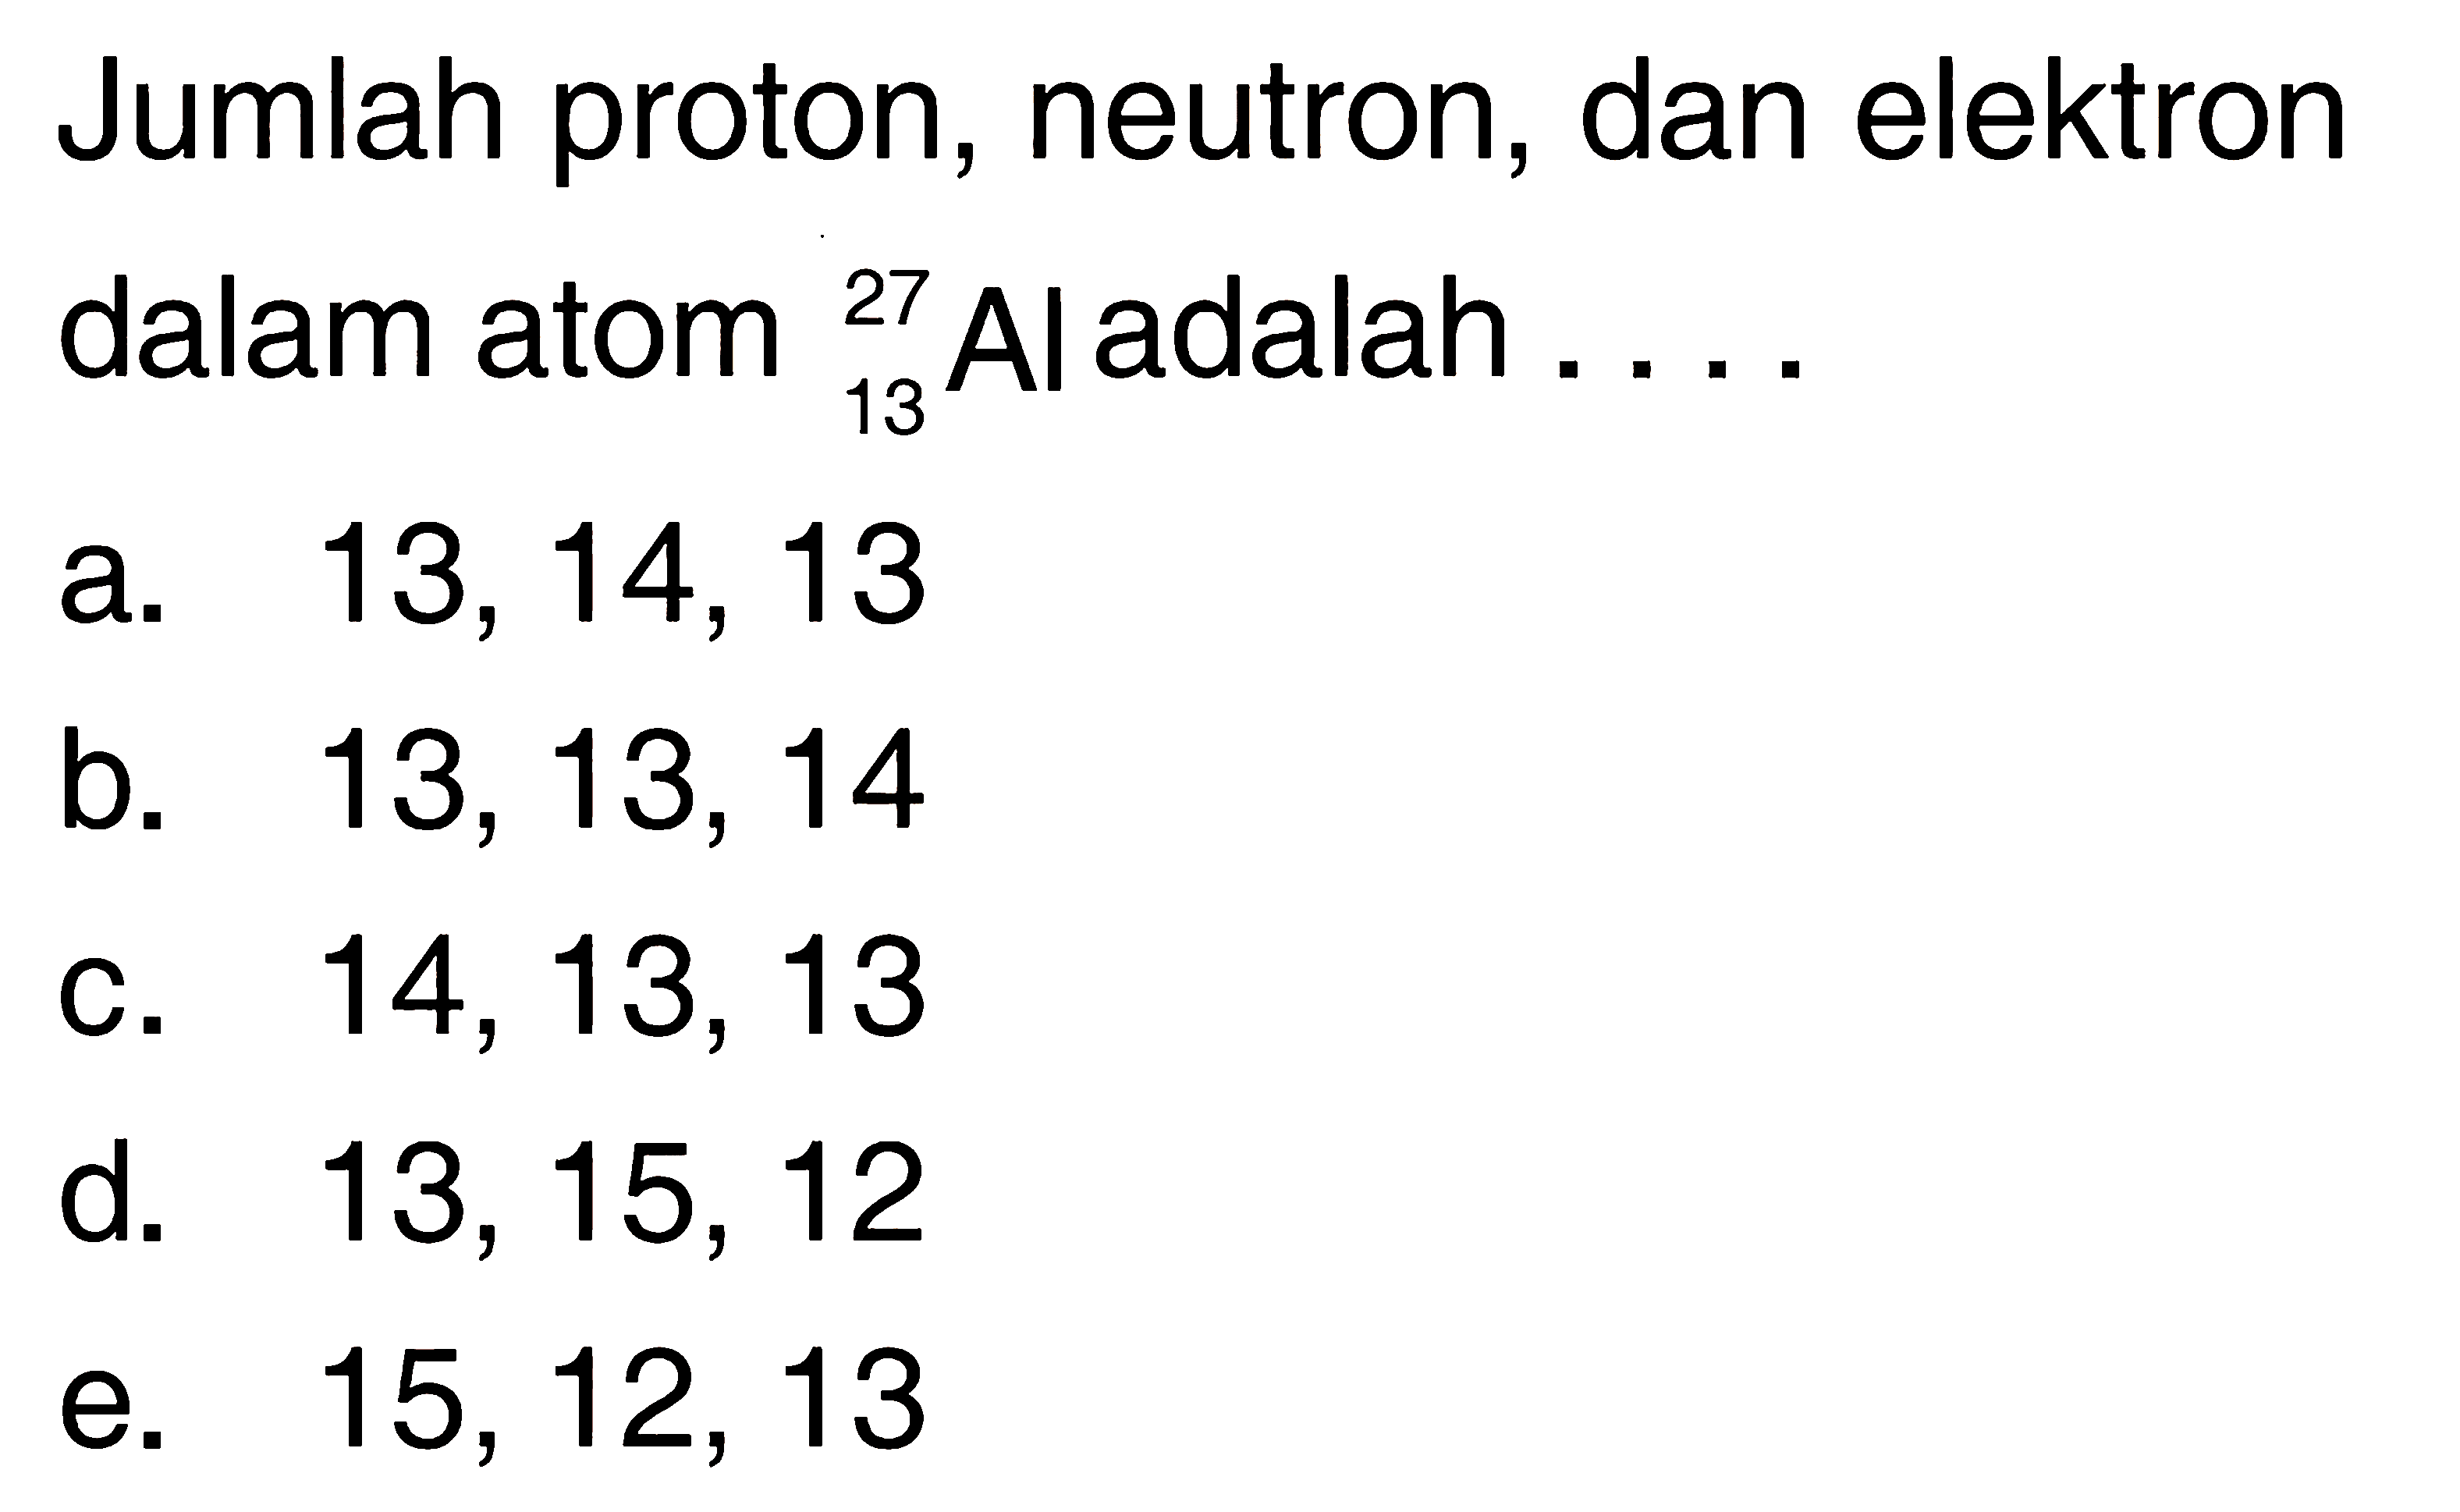 Jumlah proton, neutron, dan elektron dalam atom   13 27 Al  adalah  ... . 